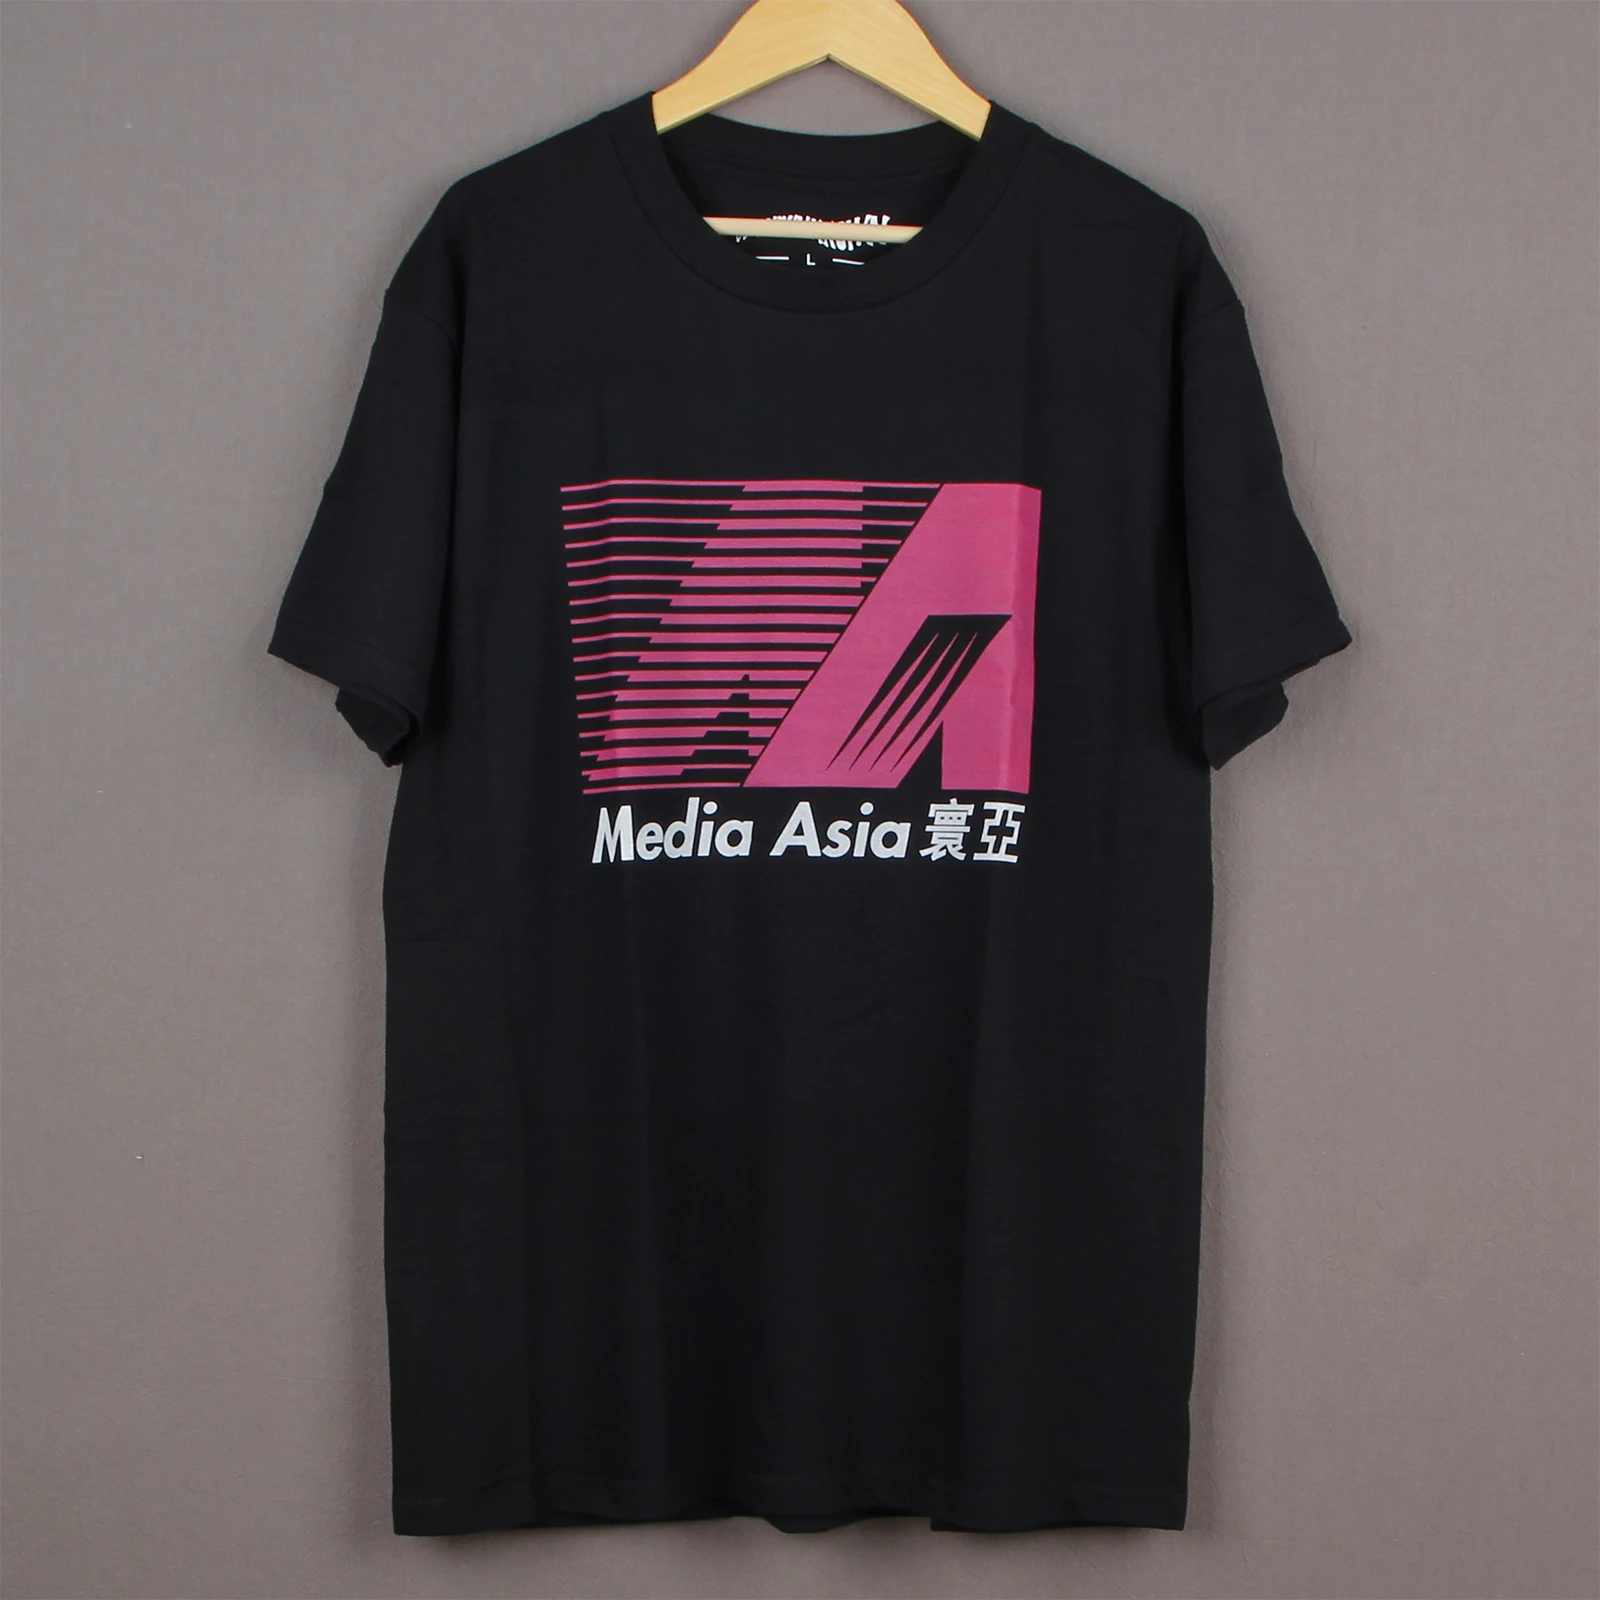 

Медиа Азия фильм футболка шоу братья золотой урожай мужские футболки